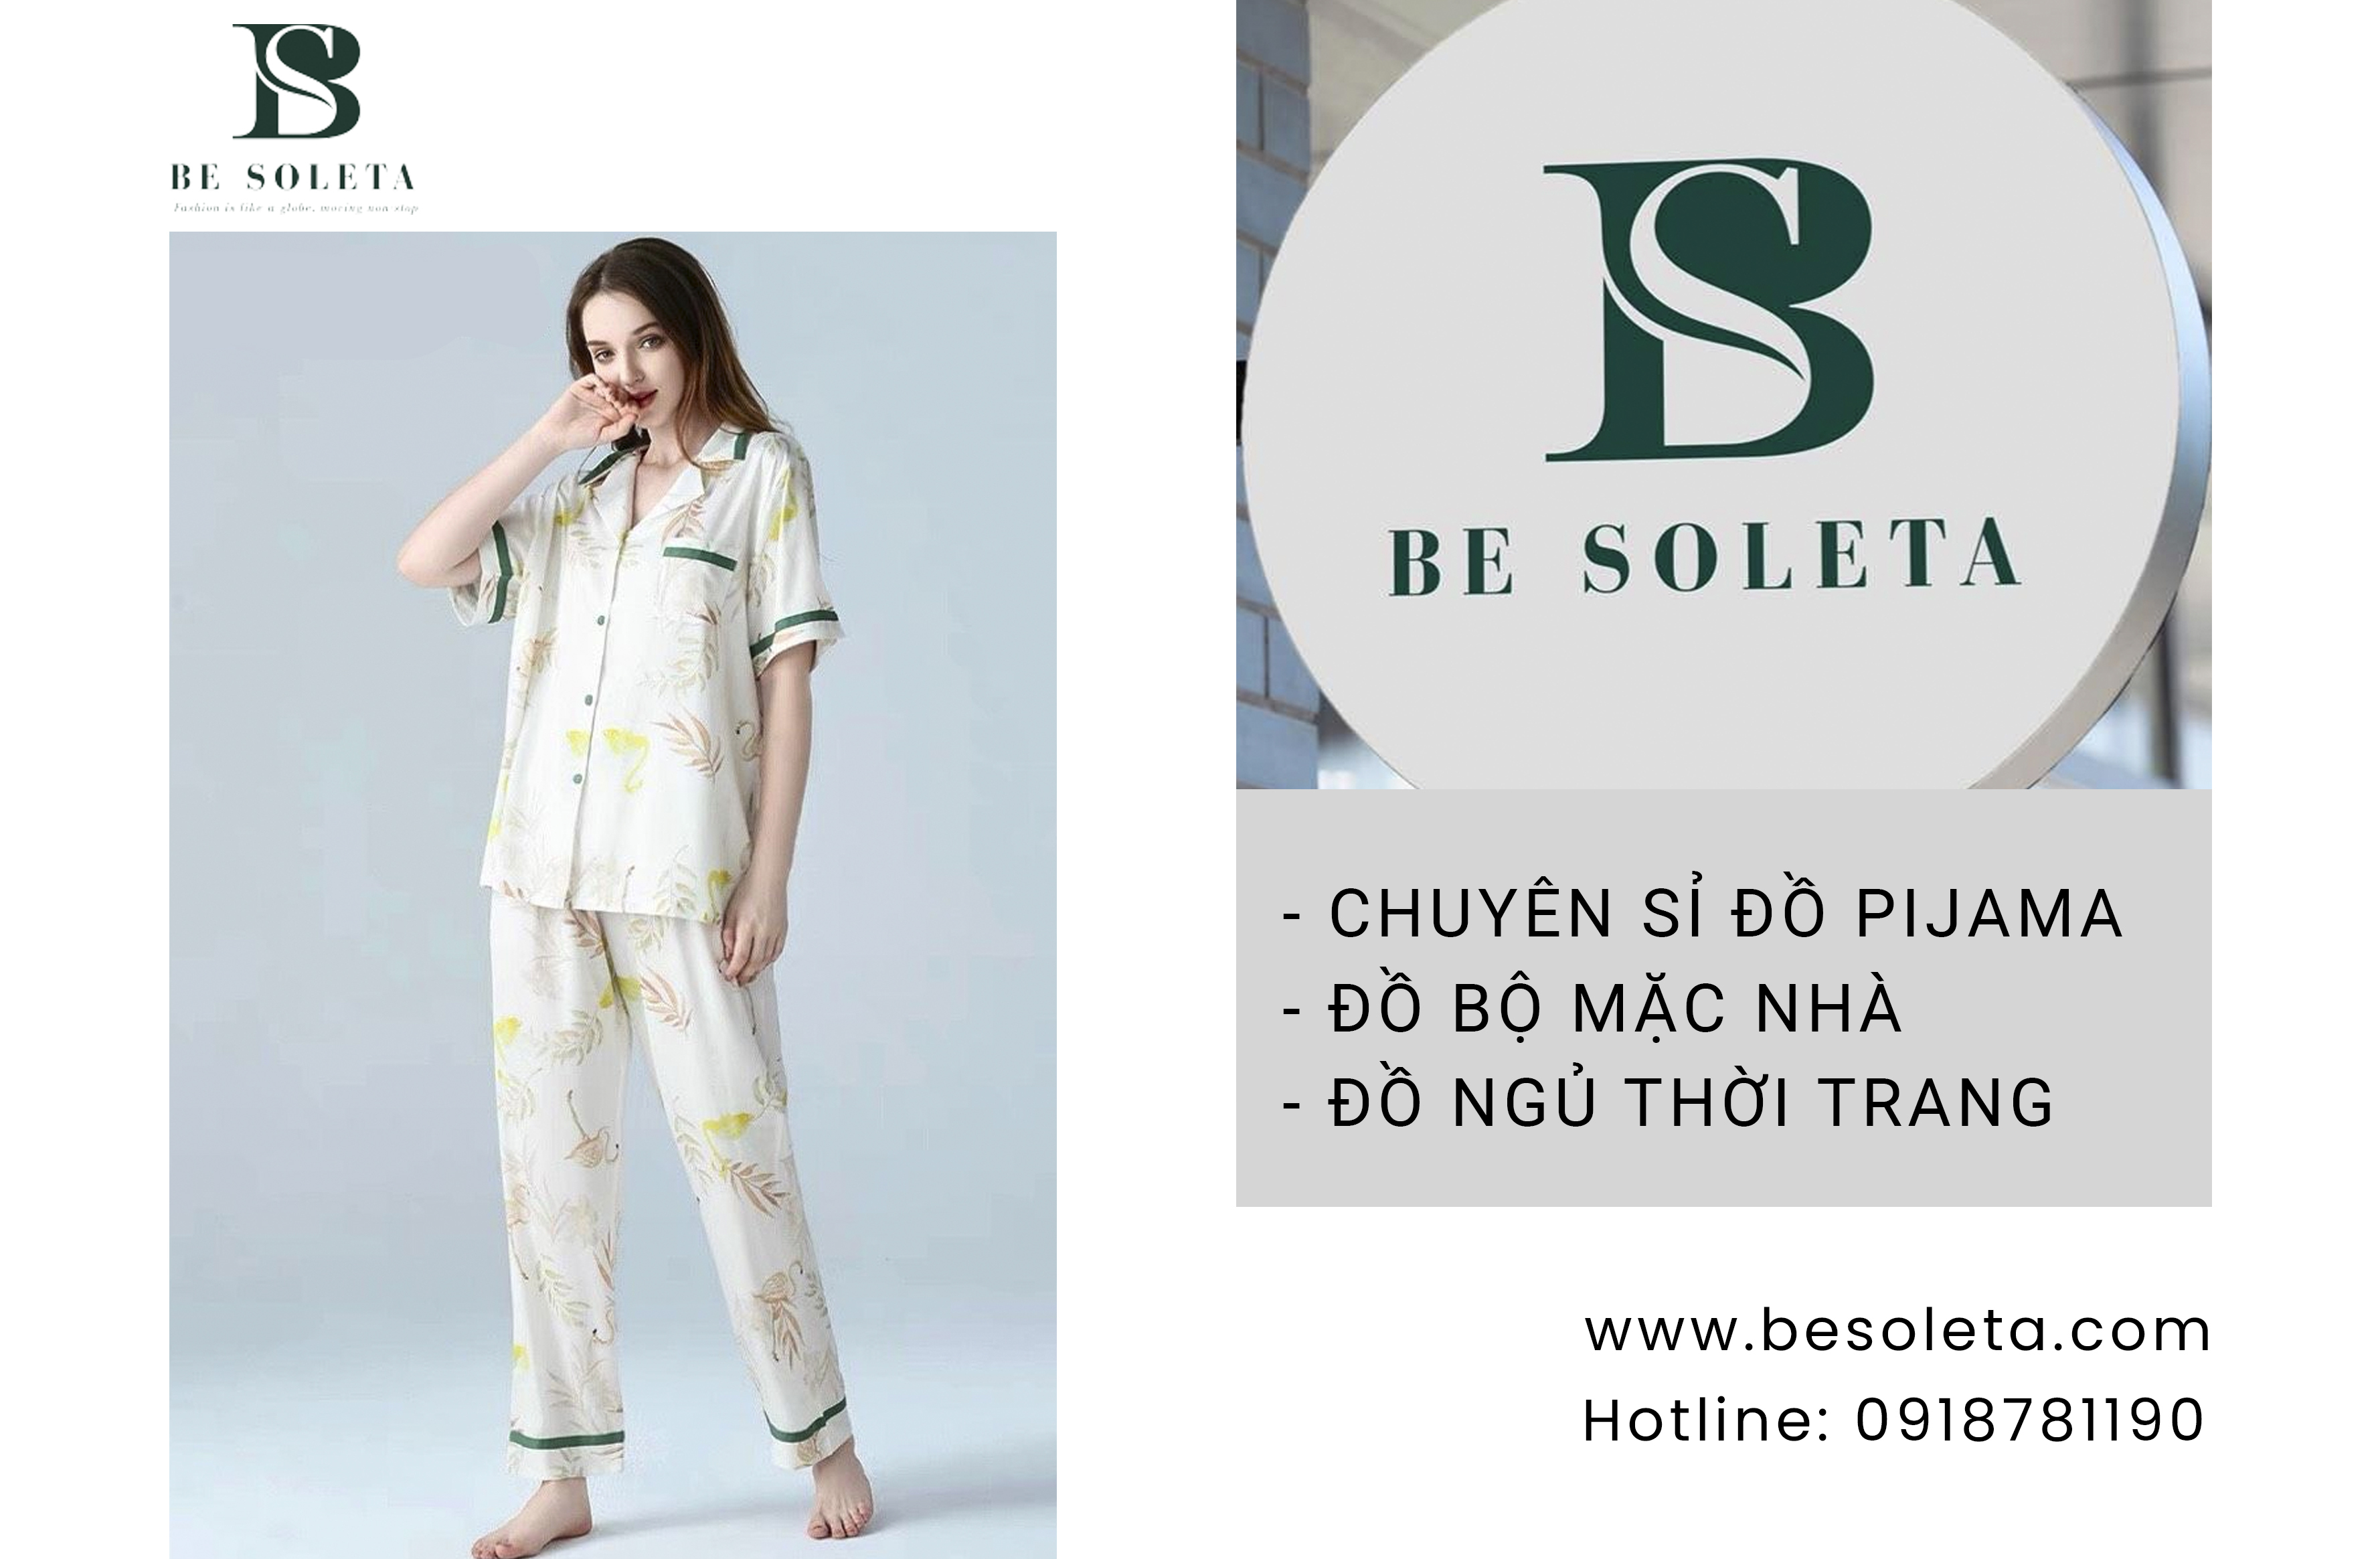 Be Soleta - Chuyên sỉ đồ pijama, thời trang mặc nhà